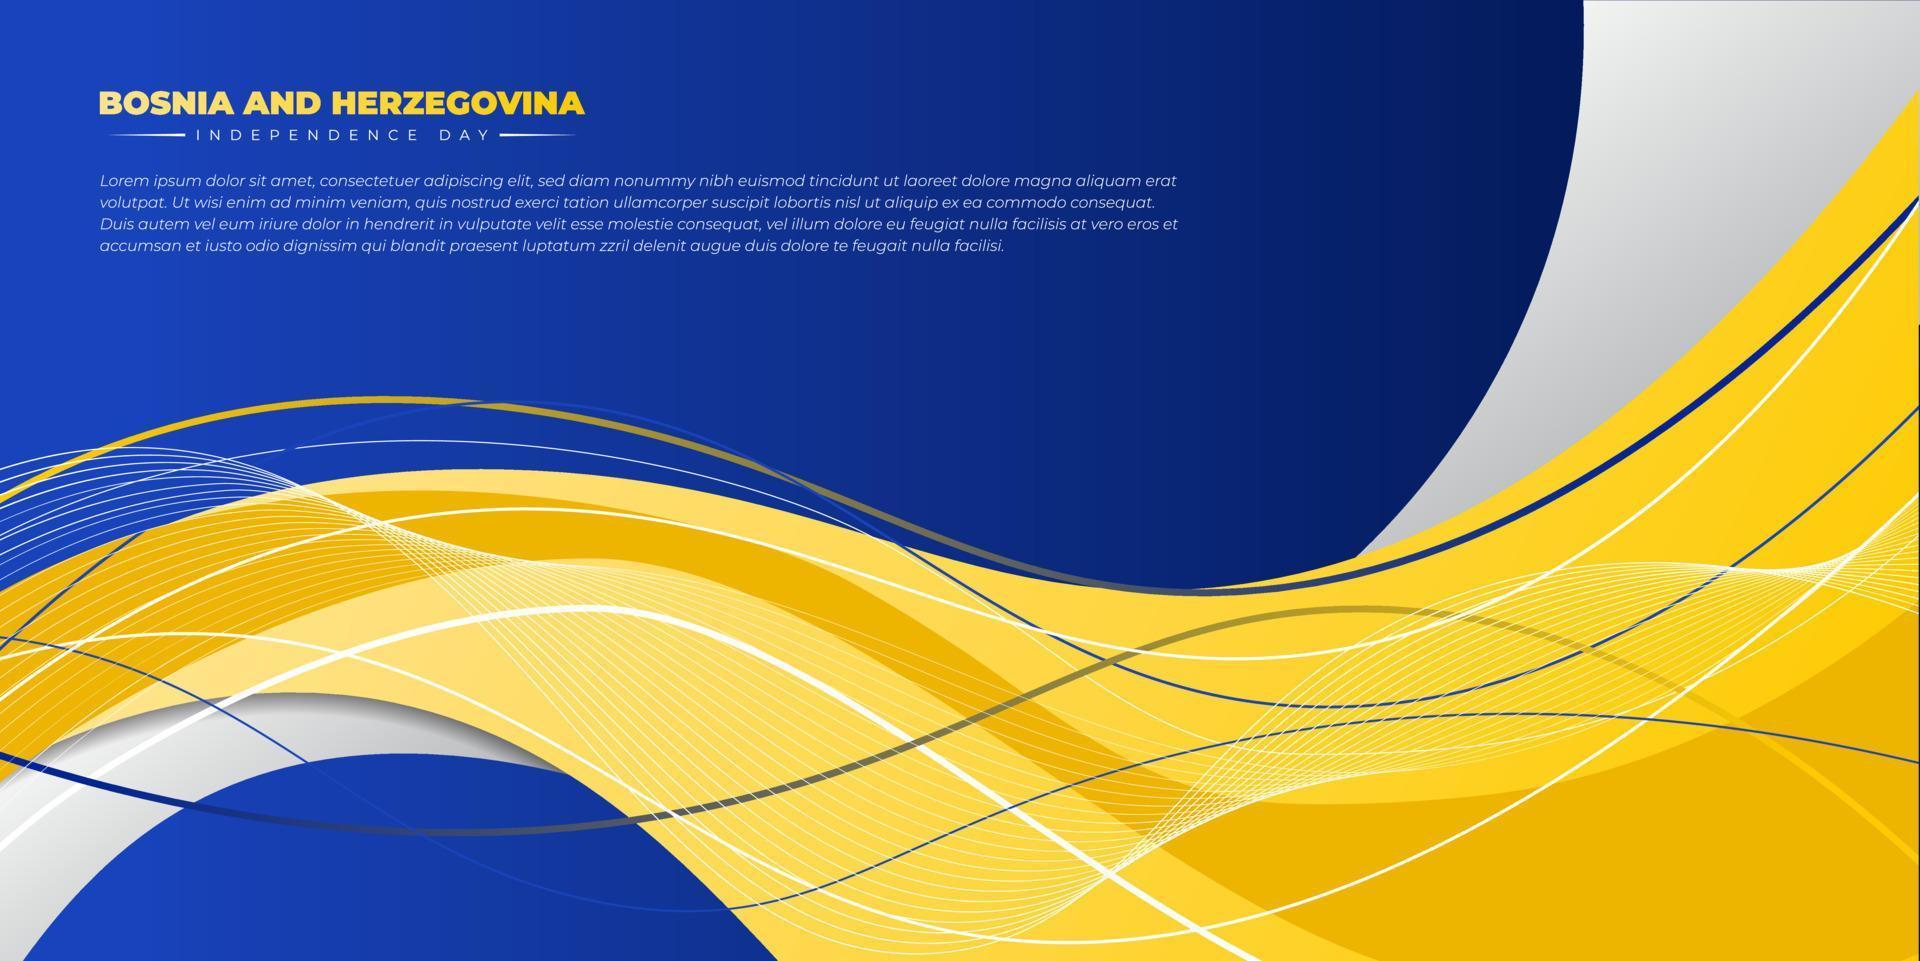 amarelo ondulado no design de fundo azul. modelo de dia da independência da bósnia e herzegovina. vetor